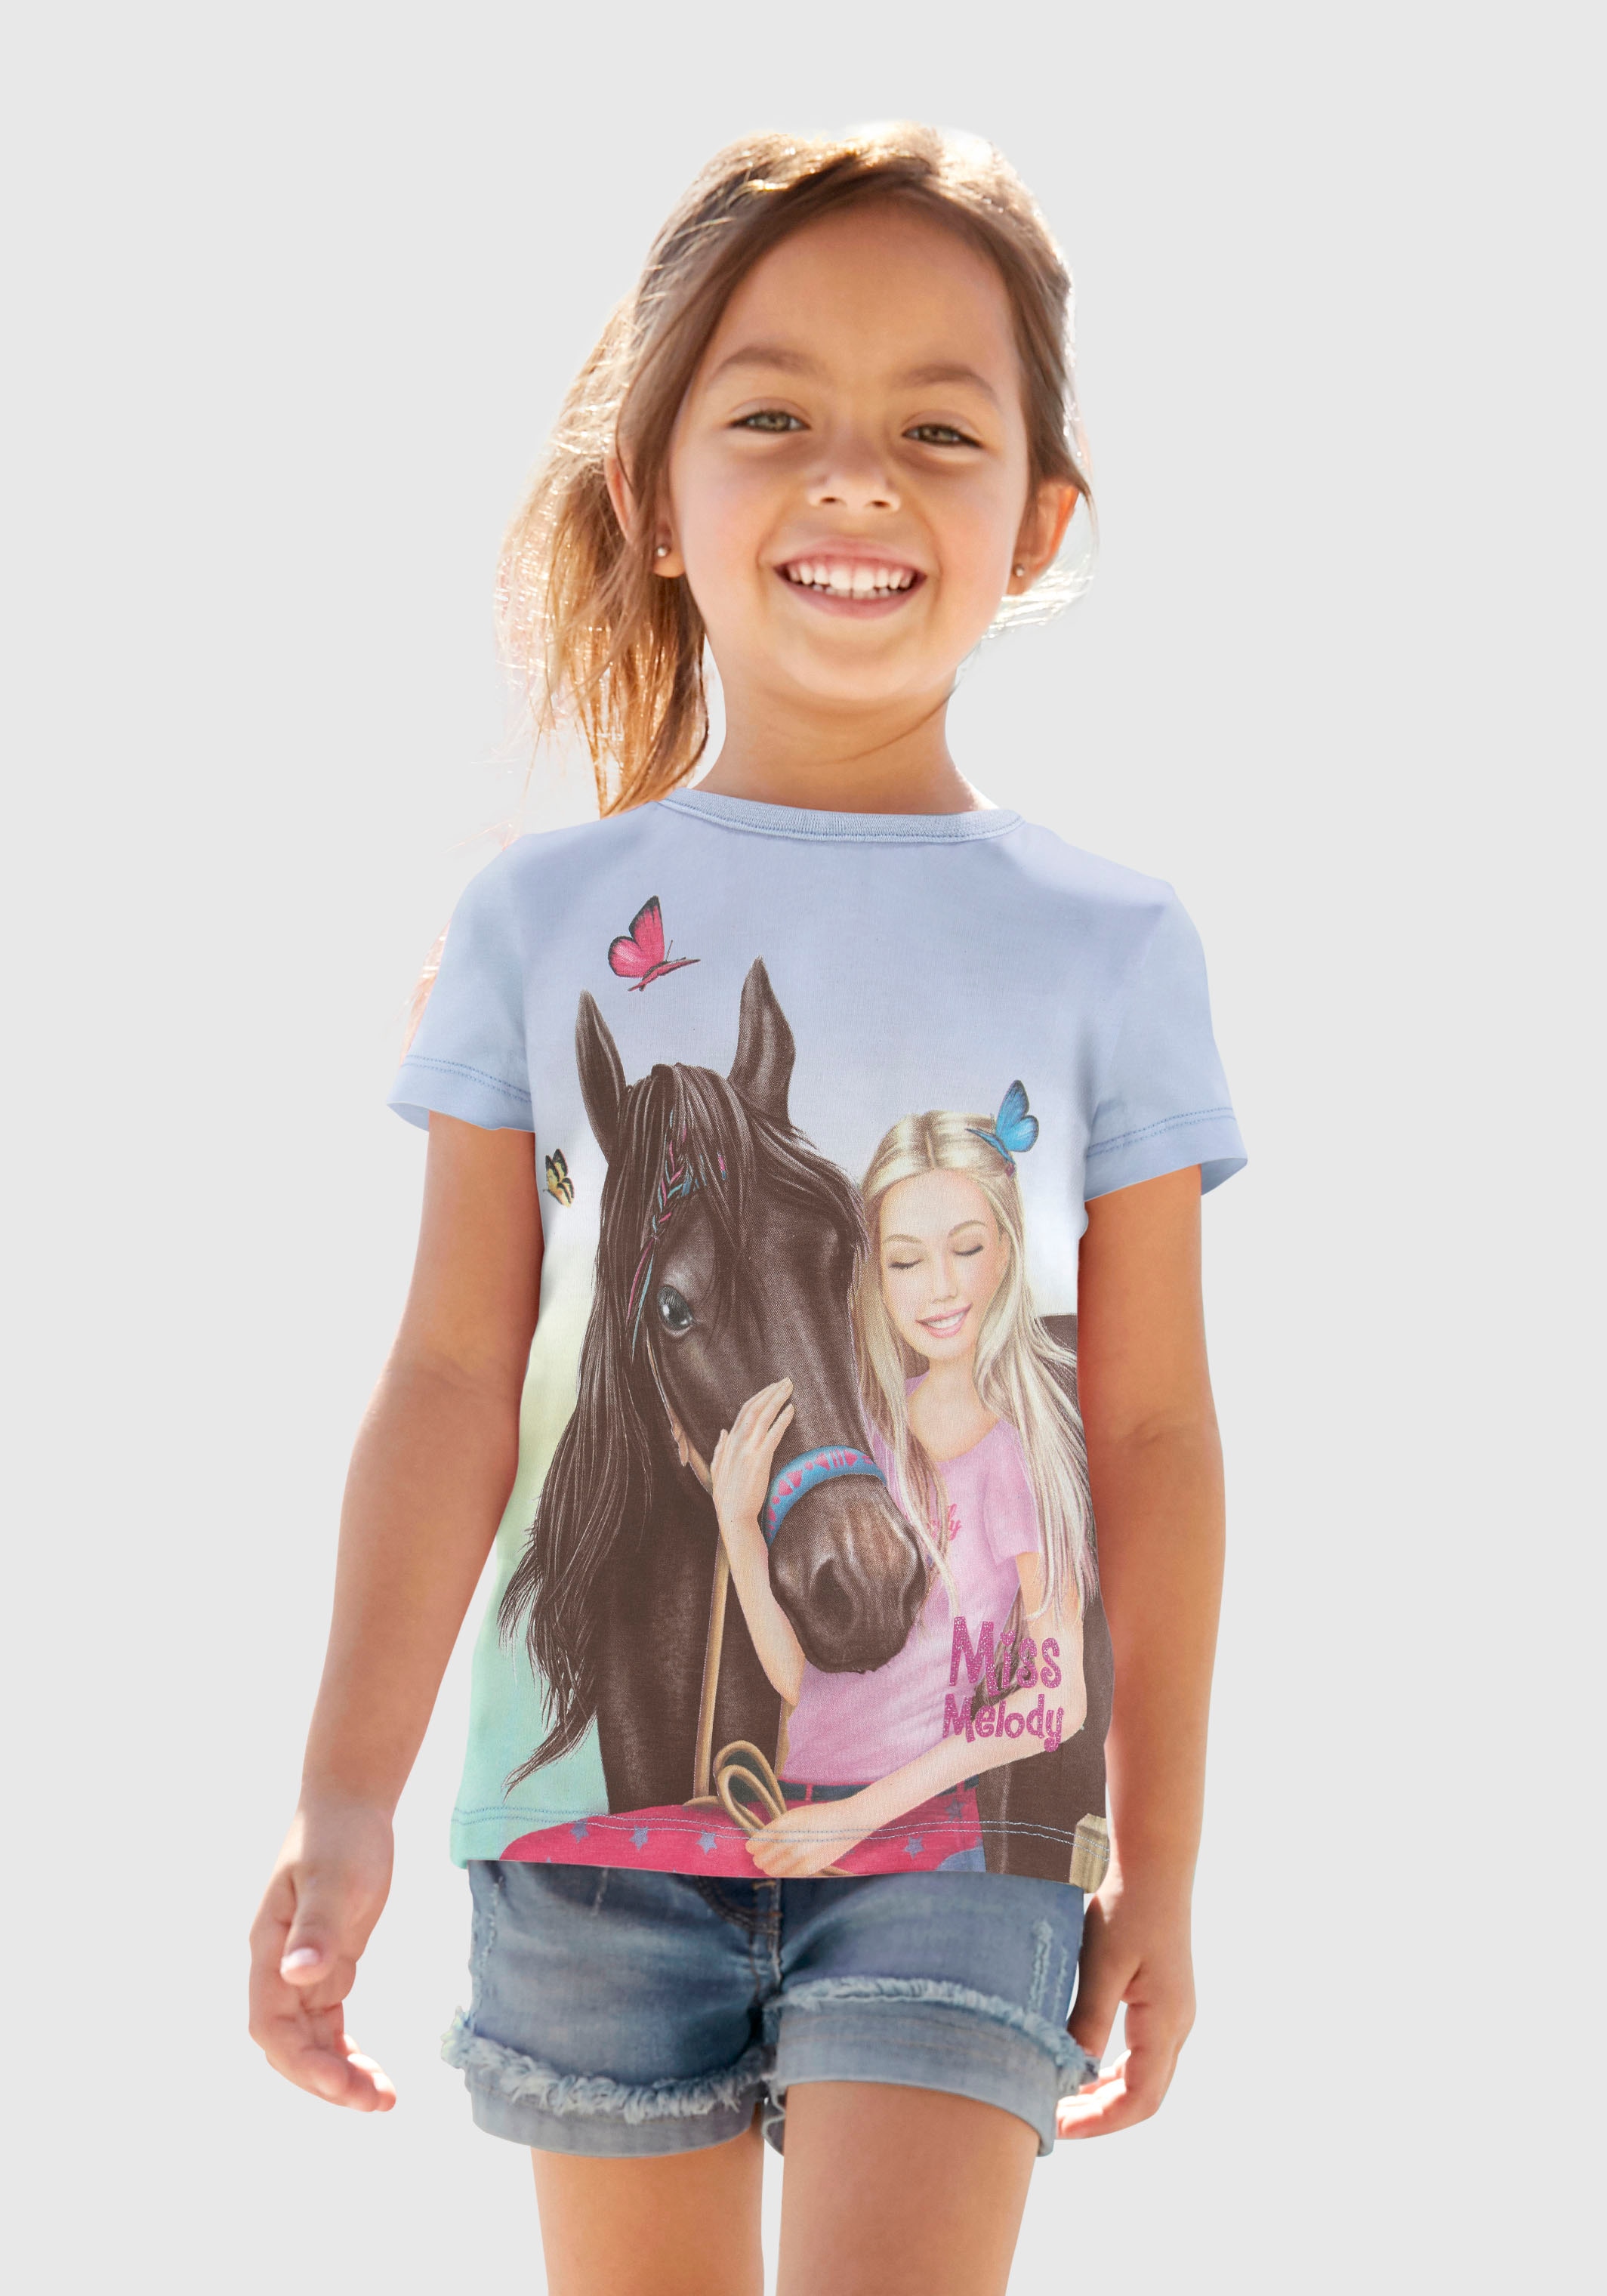 Miss Melody OTTO online Pferdemotiv mit schönem T-Shirt, bei